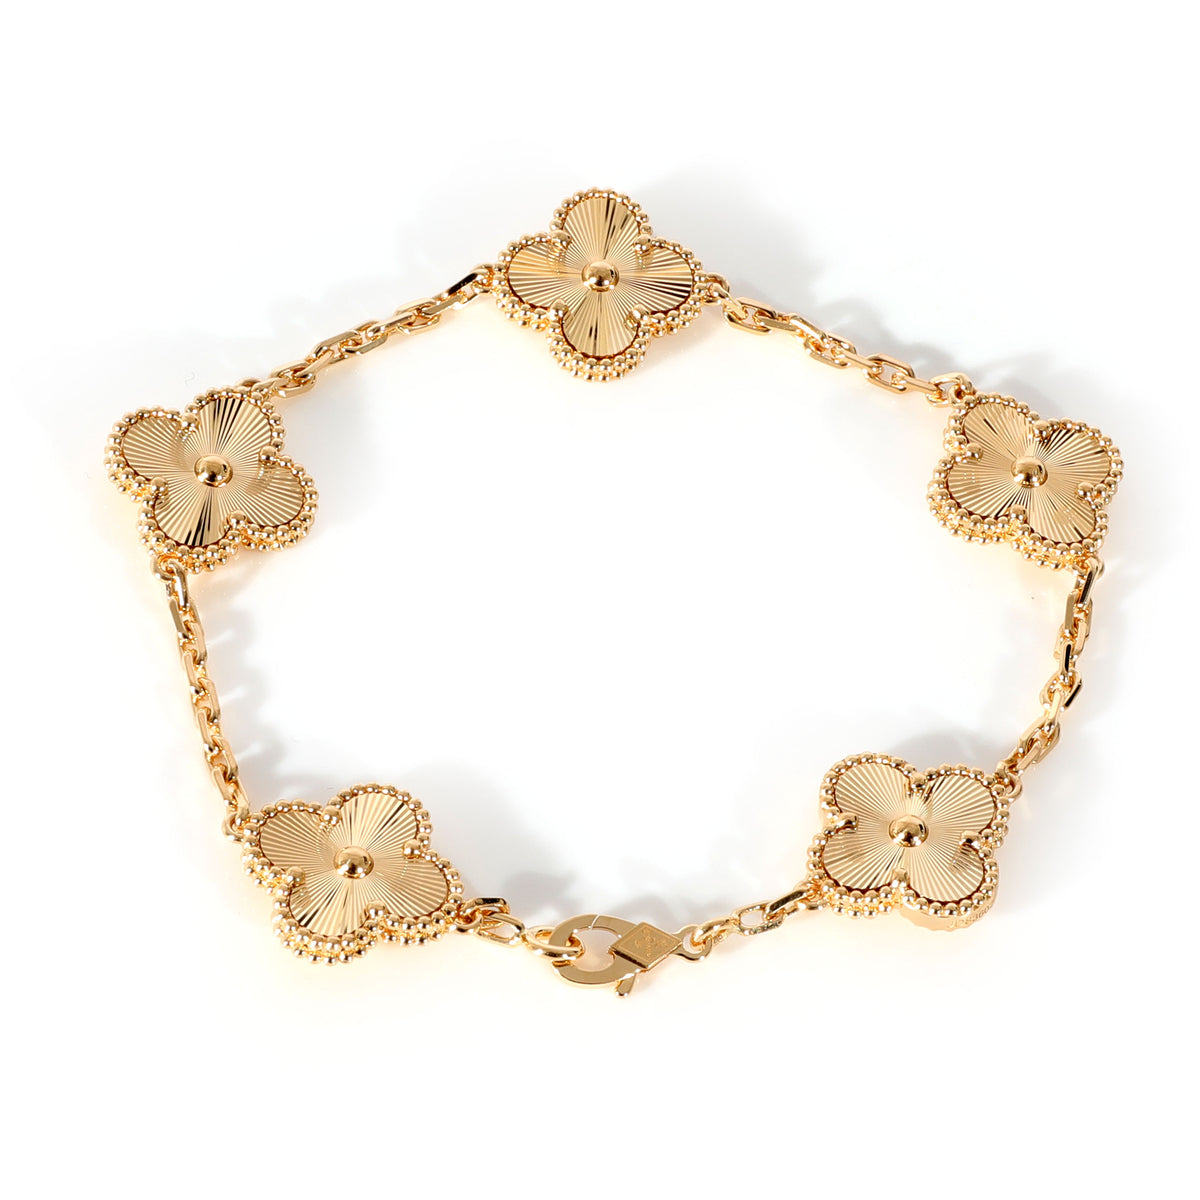 Van Cleef & Arpels Alhambra Bracelet 351988